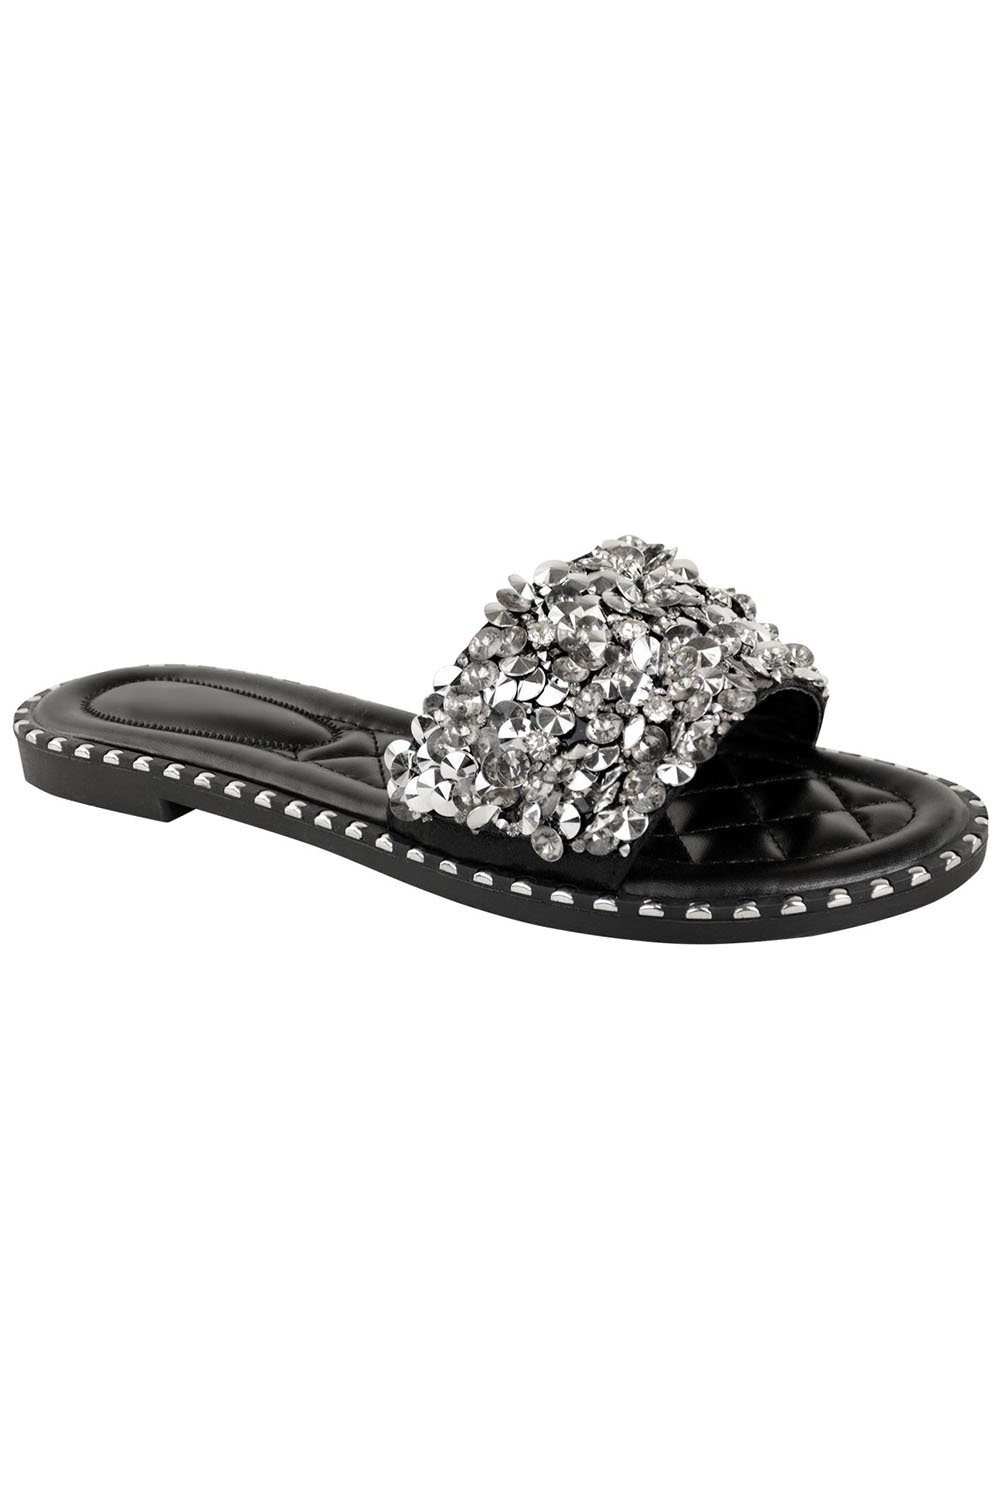 Black Embellished Flat Slider Sandals, Image 3 of 3